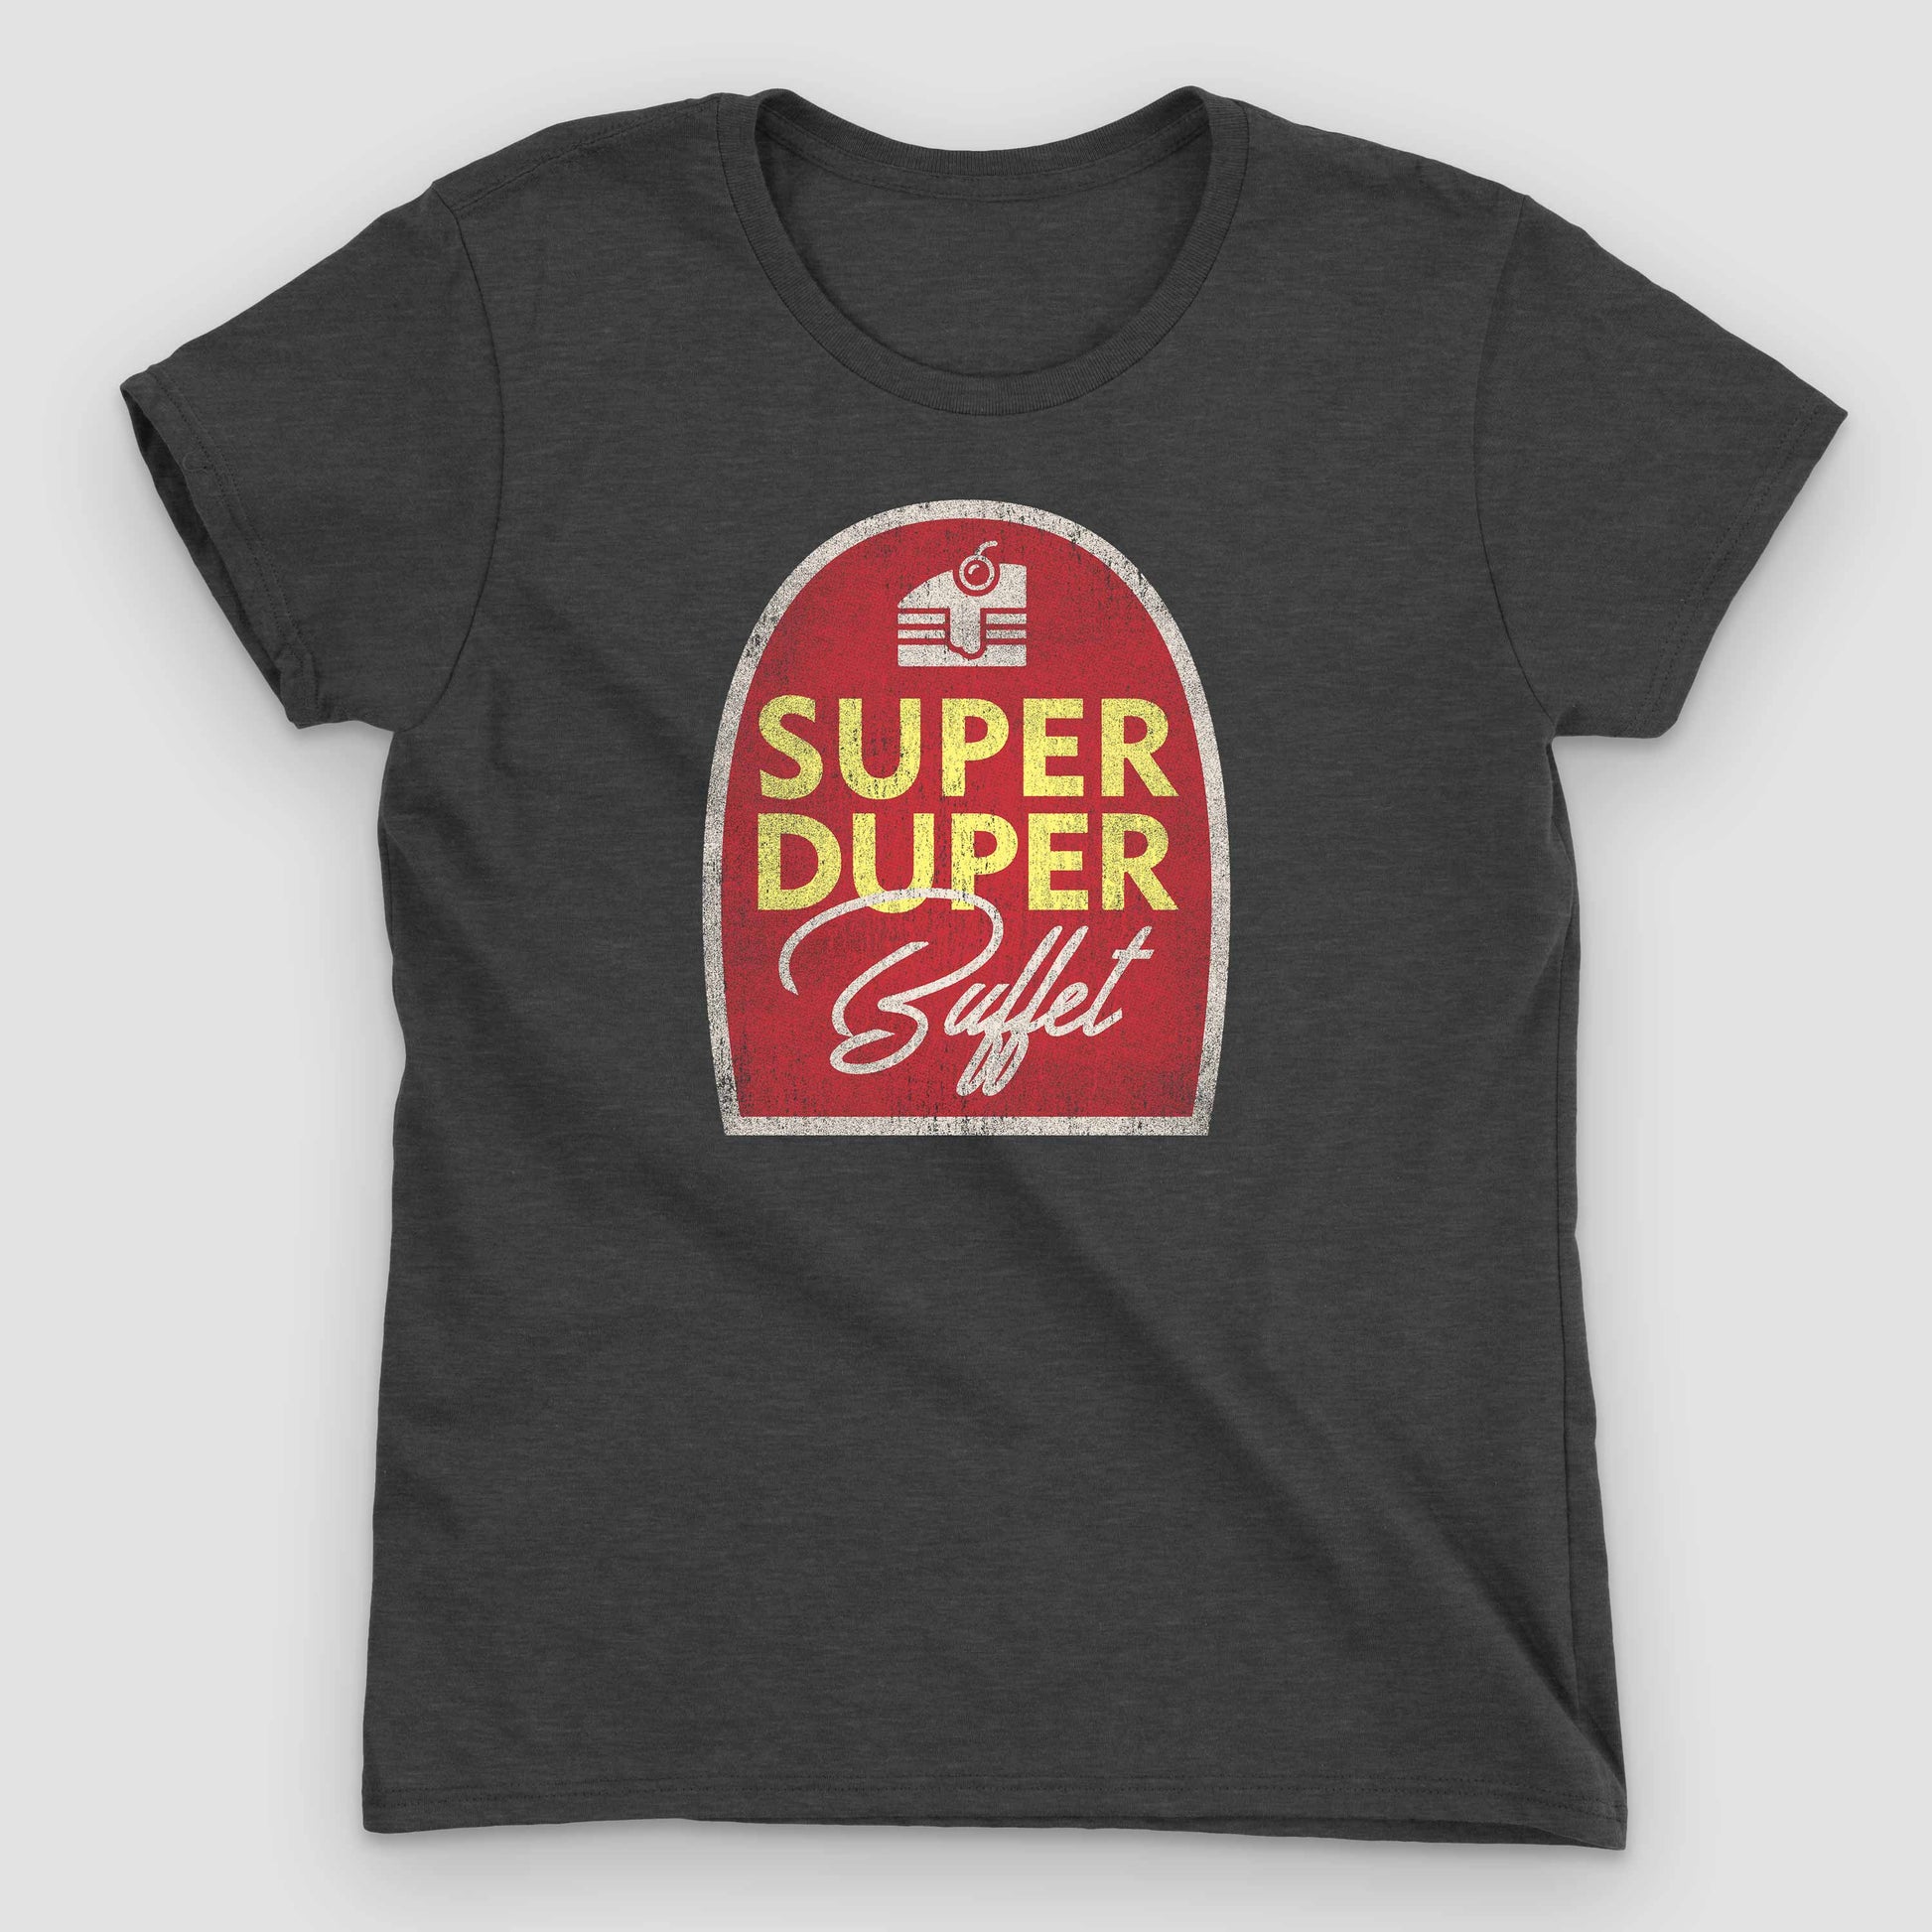 Heather Dark Grey Super Duper Buffet Women's T-Shirt by Snaxtime